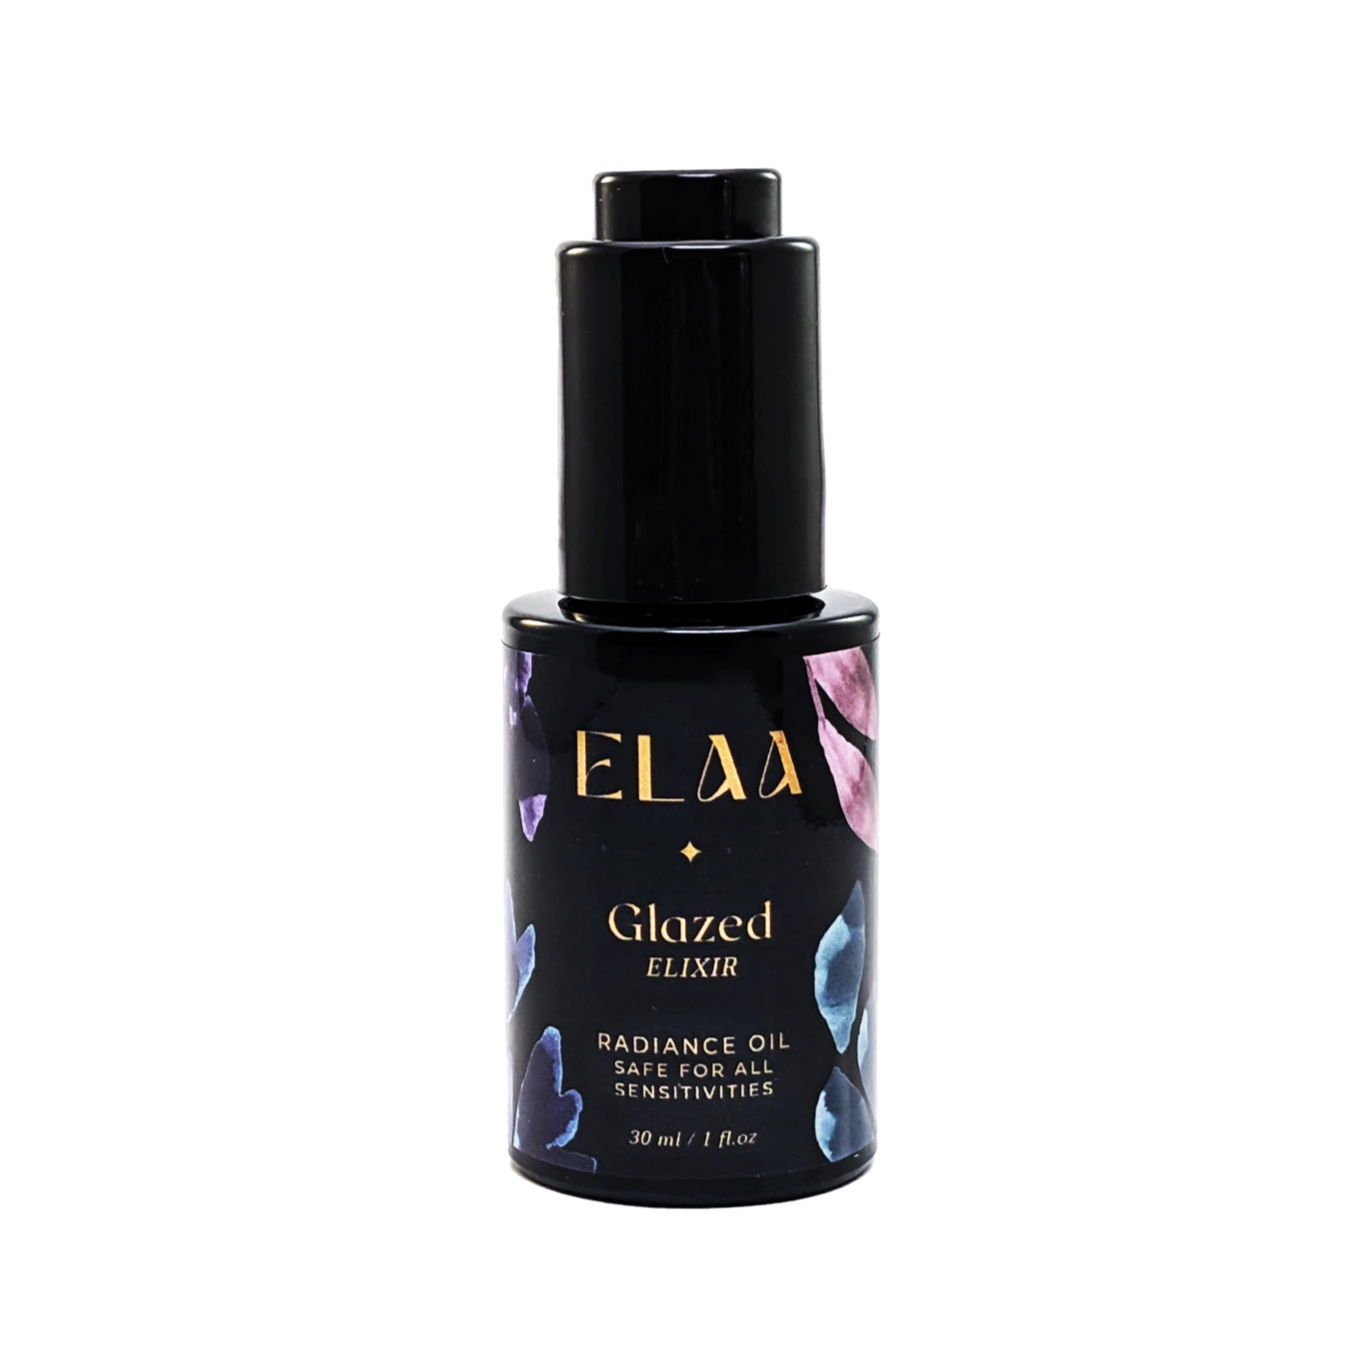 Elaa Skincare | Glazed Elixir | Radiance Oil For All